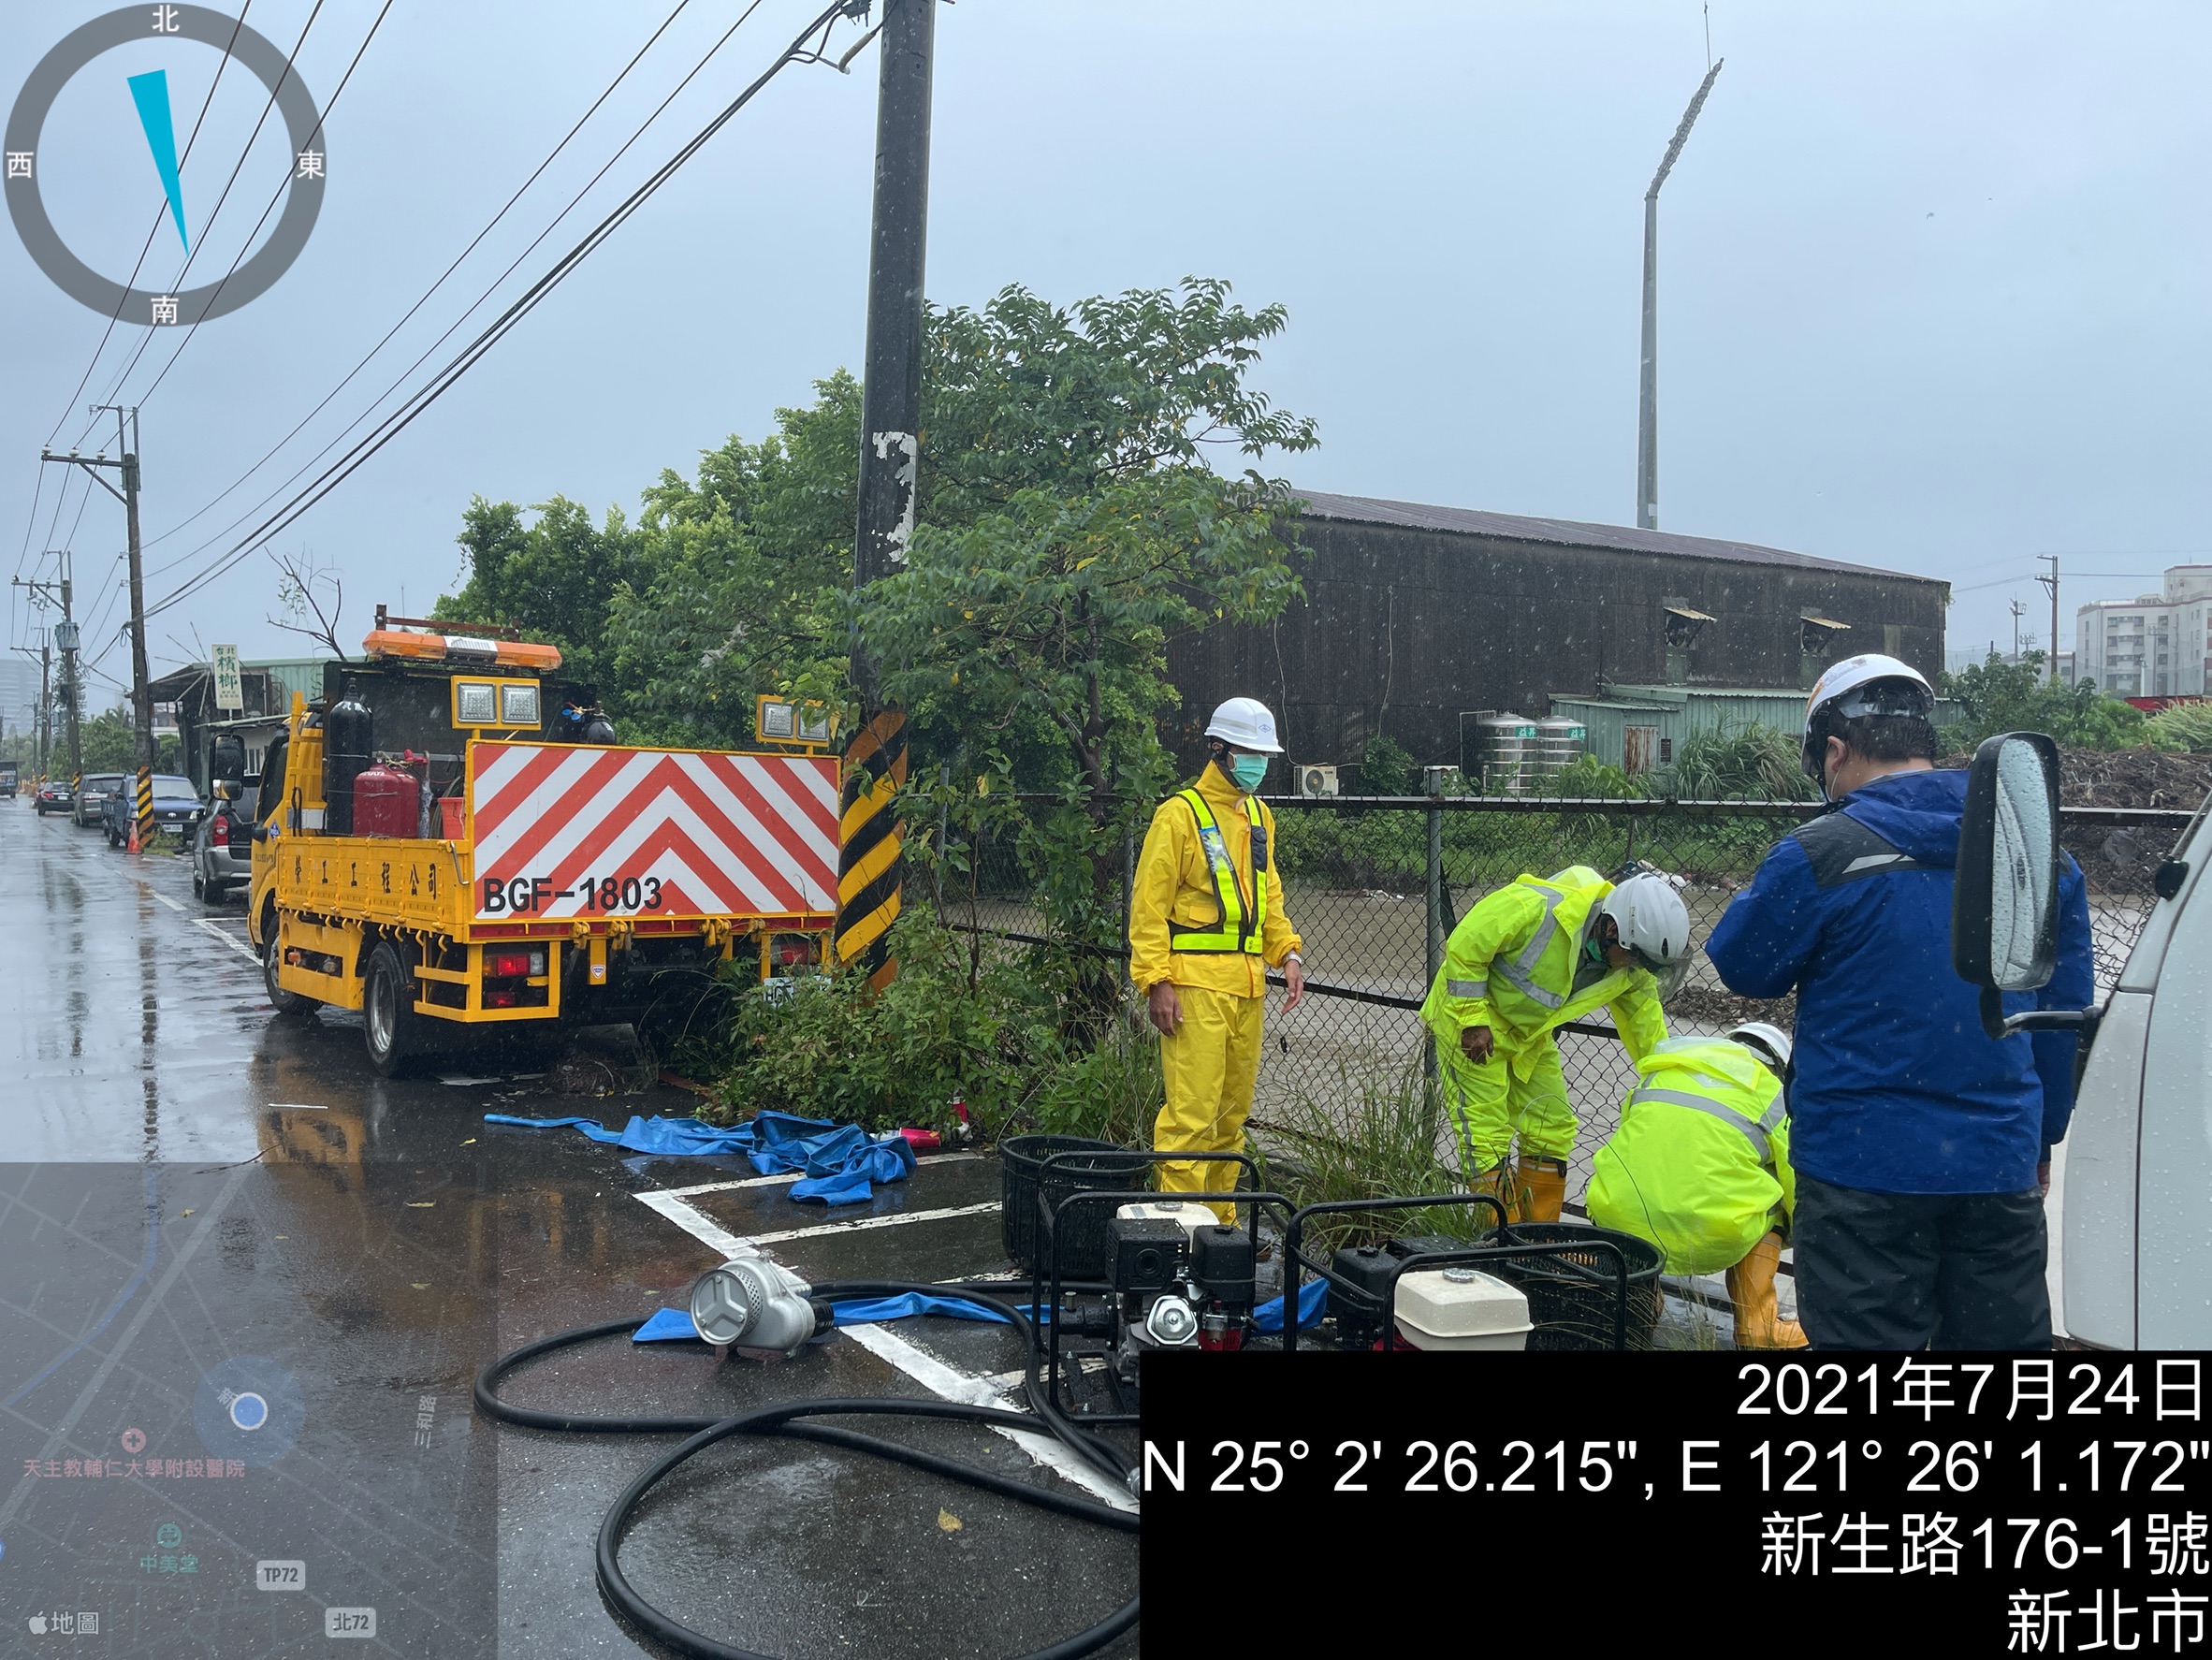 工程單位人員於颱風時期不定時巡查，若發生積水現象，能第一時間抽排化解危機。(新北地政局提供) (2)